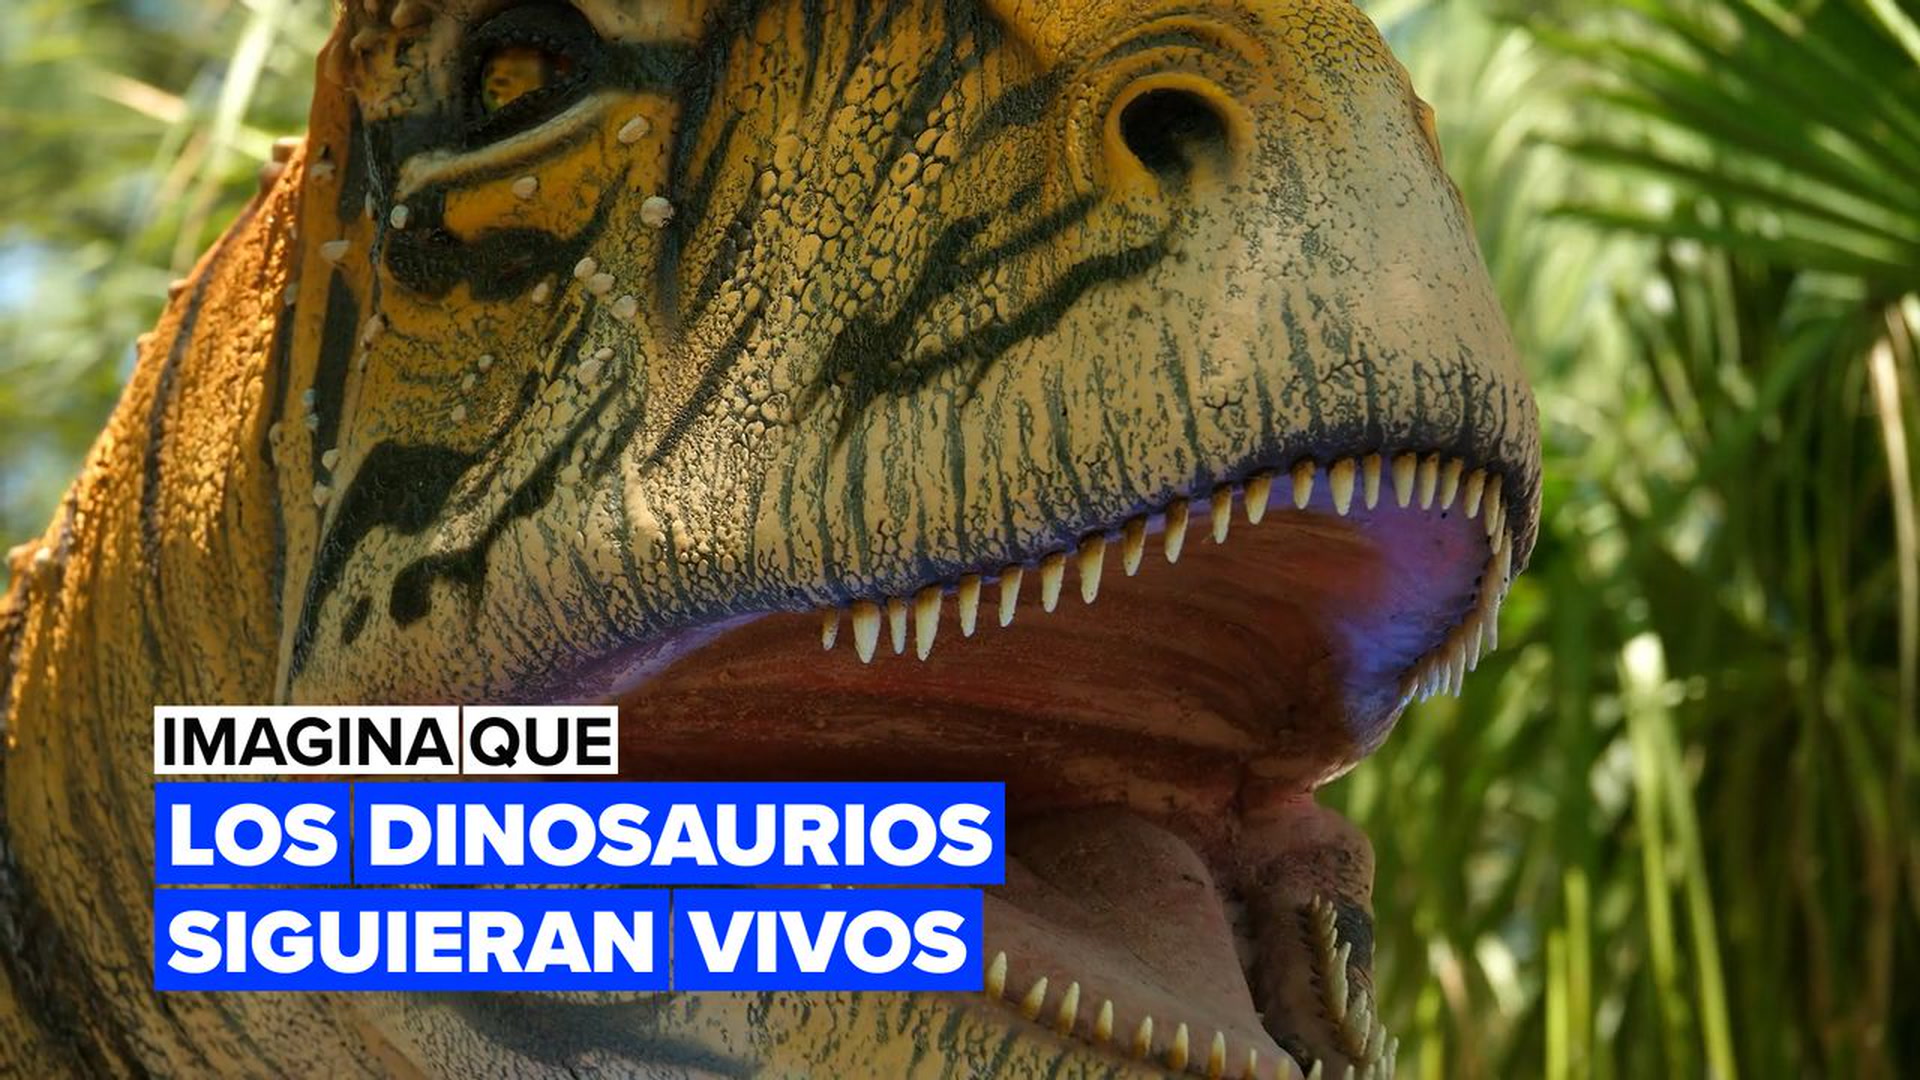 Asteroide que mató a los dinosaurios “cayó a la Tierra en primavera” |  Independent Español